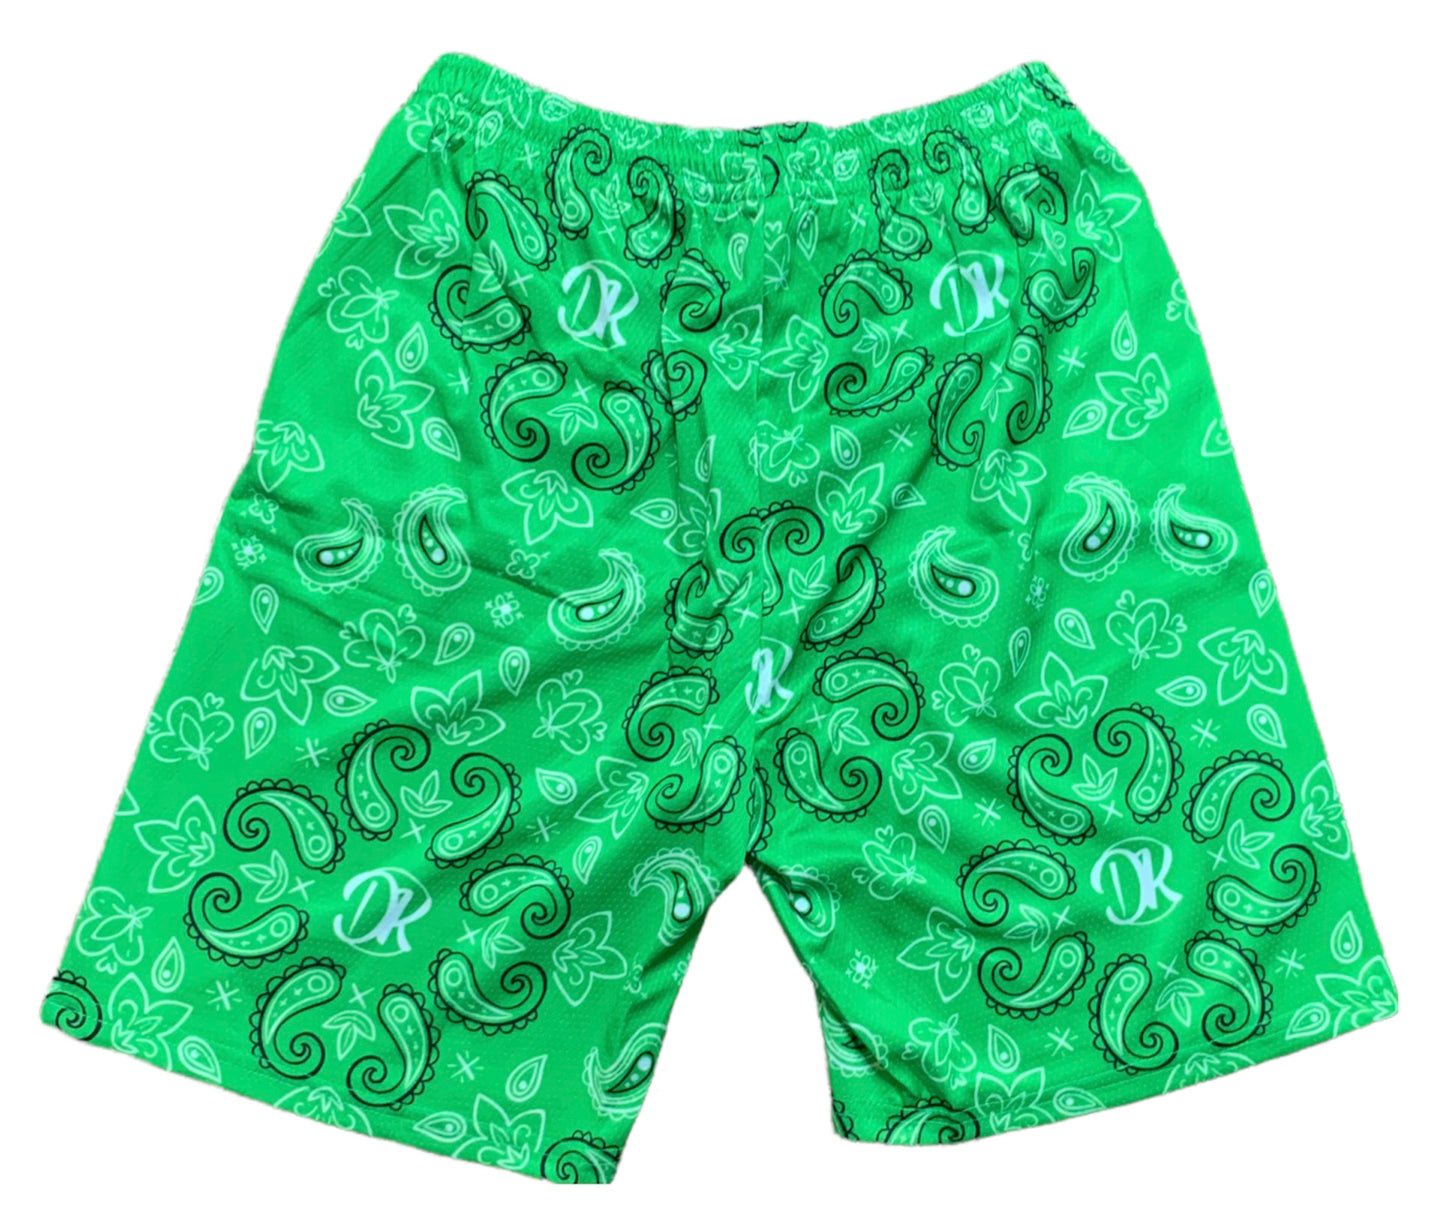 Paisley Green DK Shorts